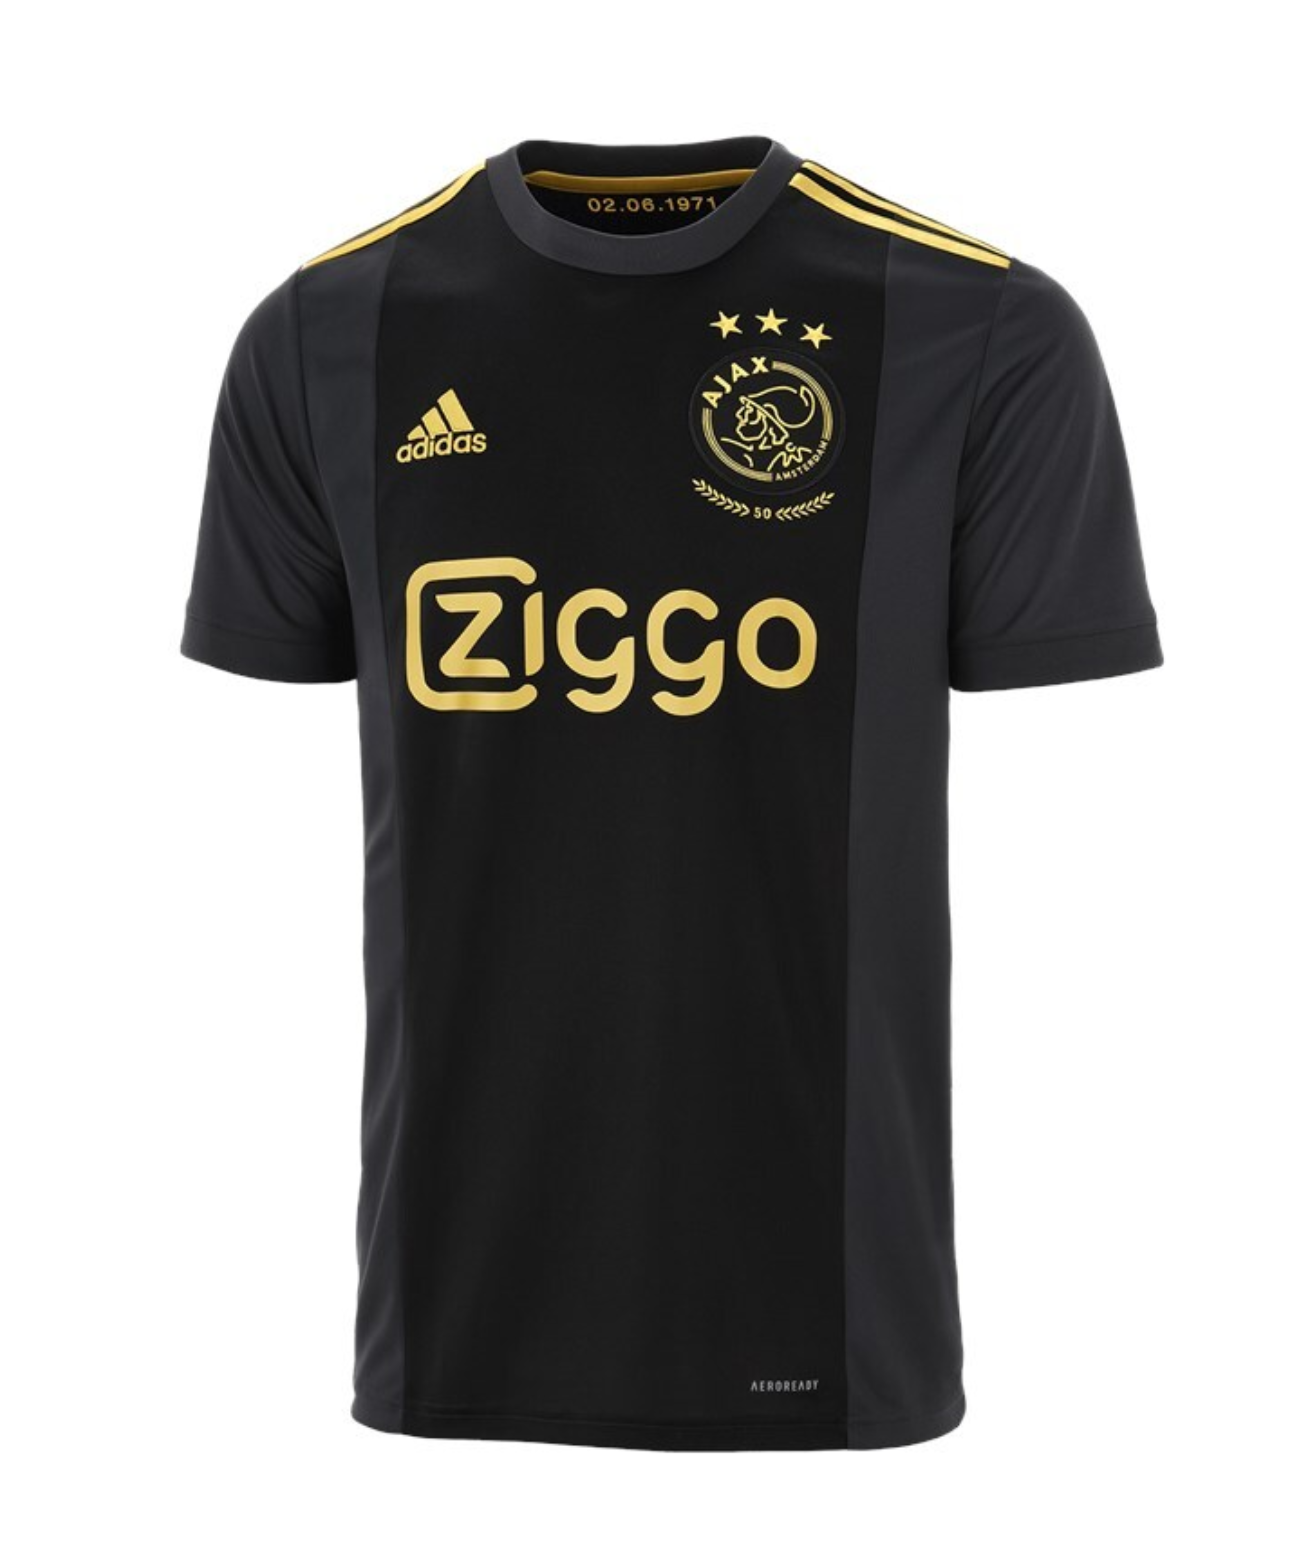 bevestig alstublieft Zoeken molecuul Ajax lanceert derde shirt voor Champions League: ode aan eerste Europa Cup  1 - Voetbalprimeur